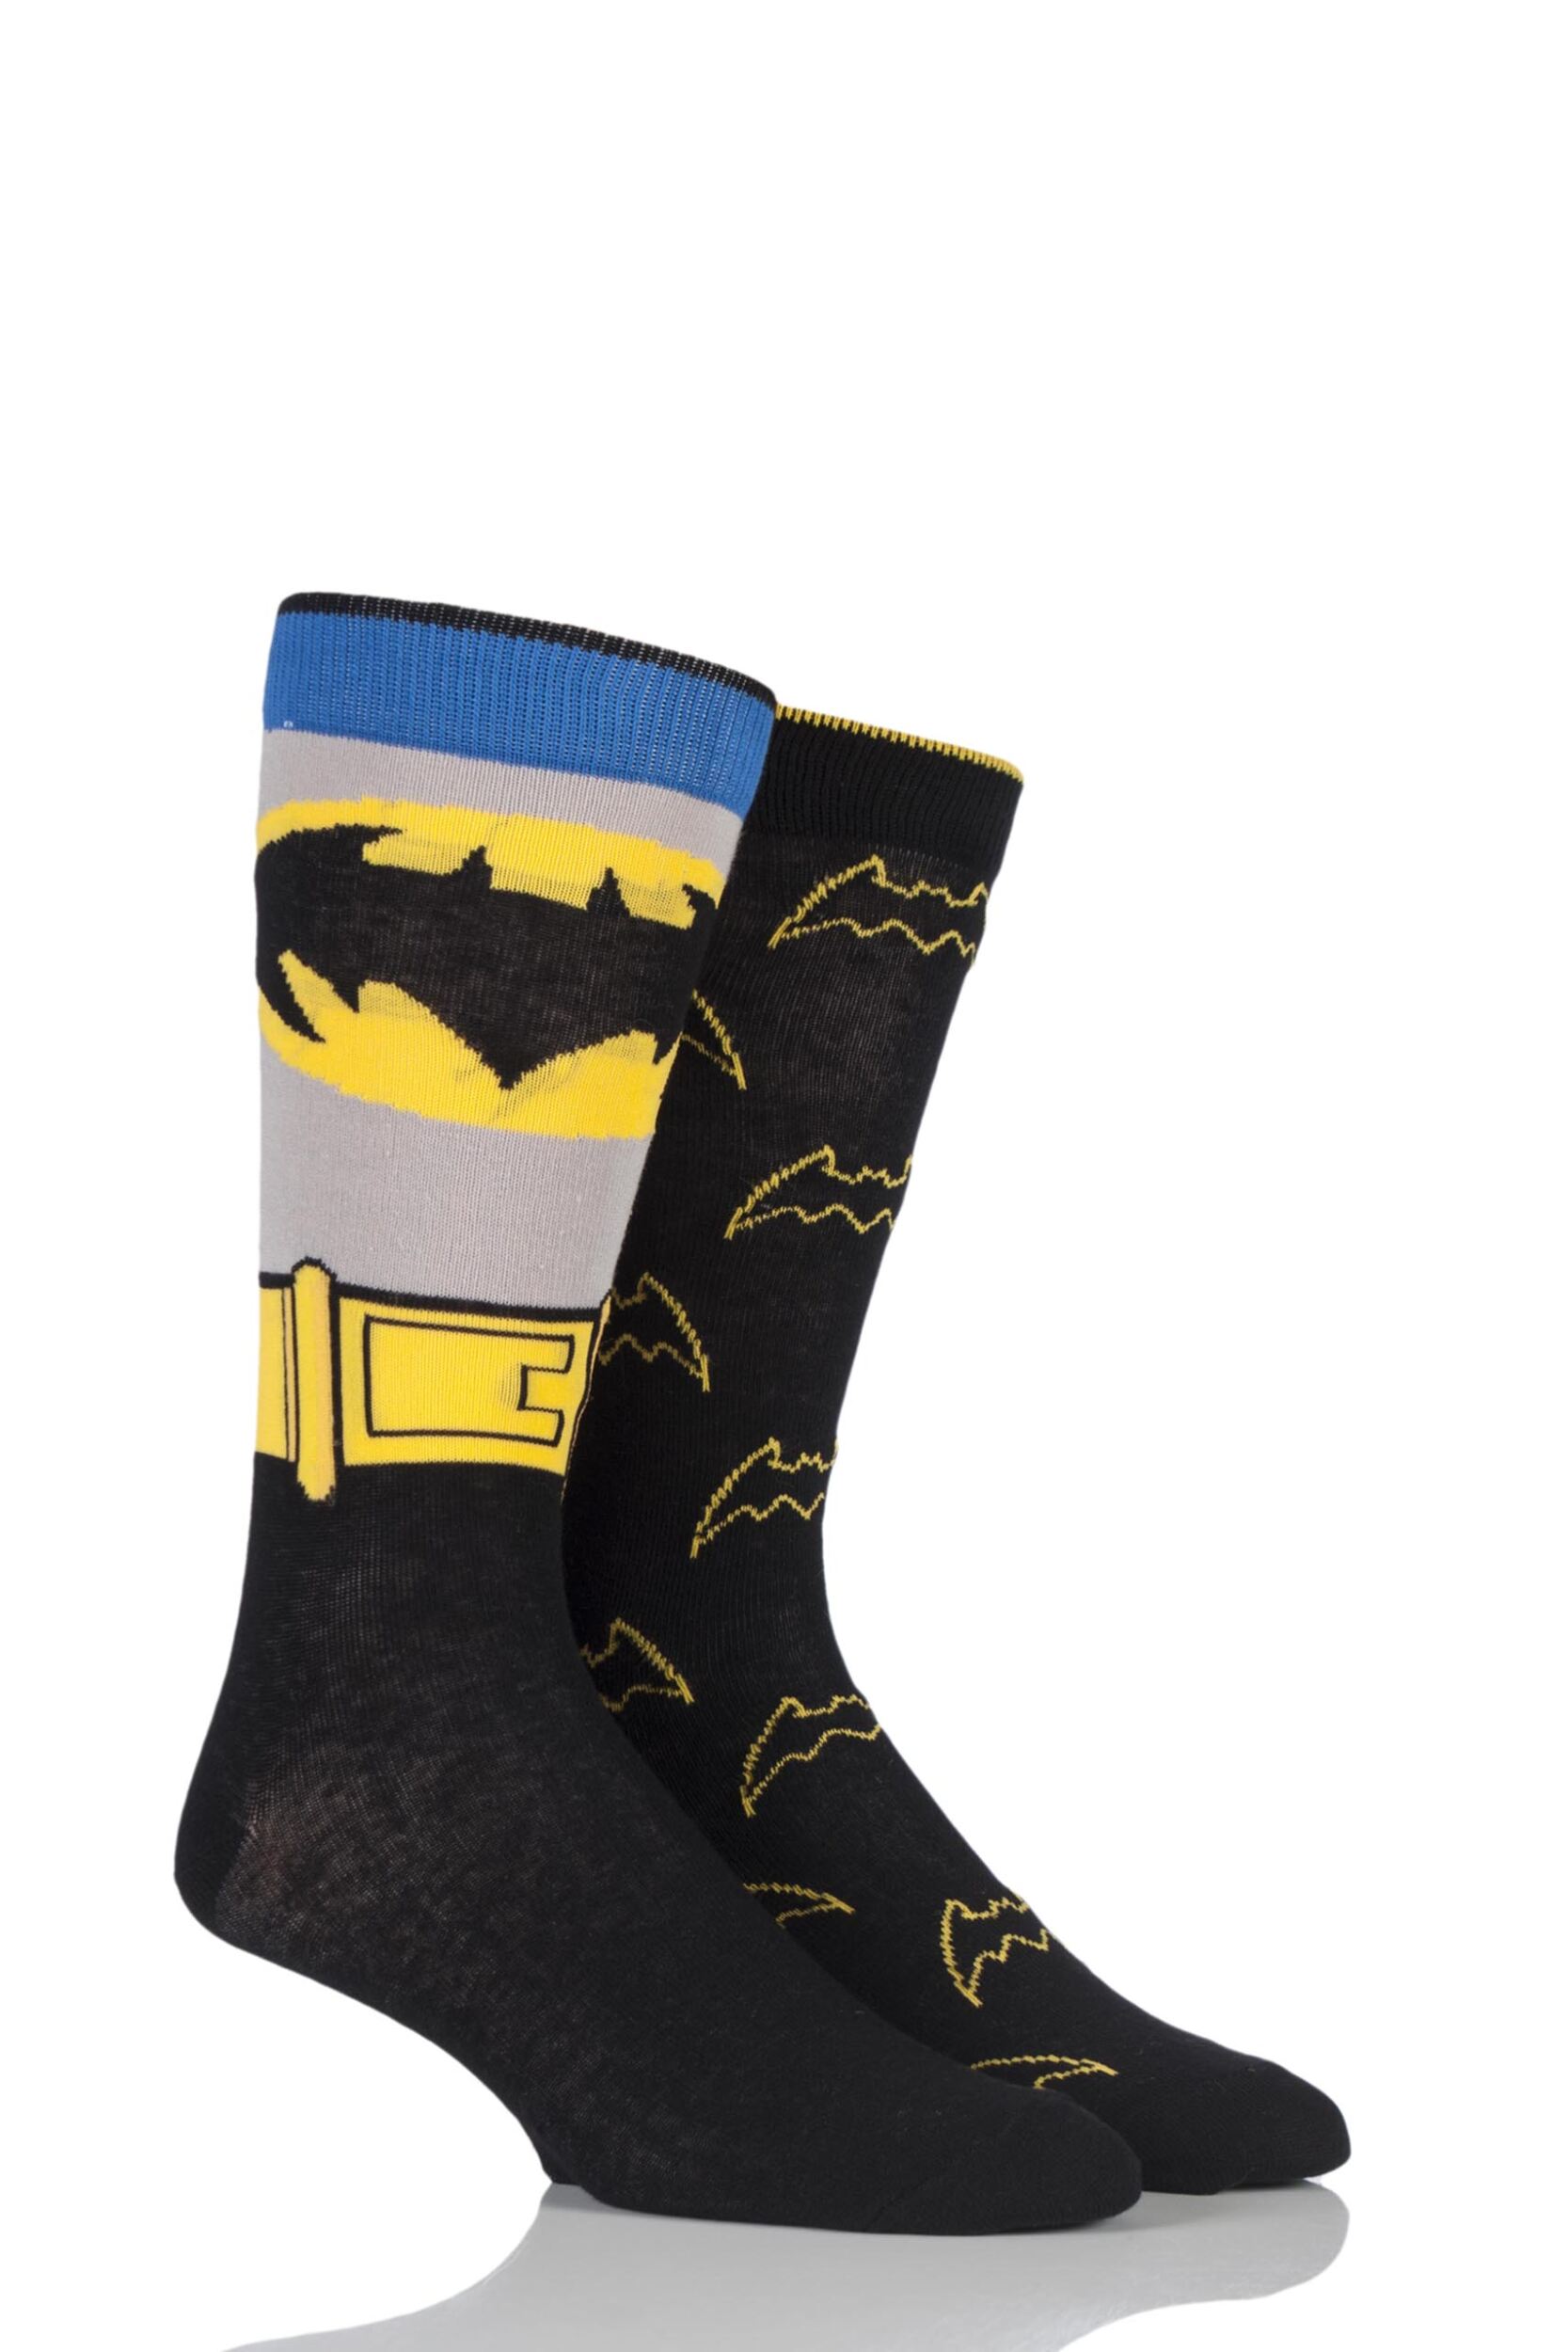 2 Pair Assorted DC Comics Mix Batman Socks Men's 11-13 Mens - Film & TV Characters